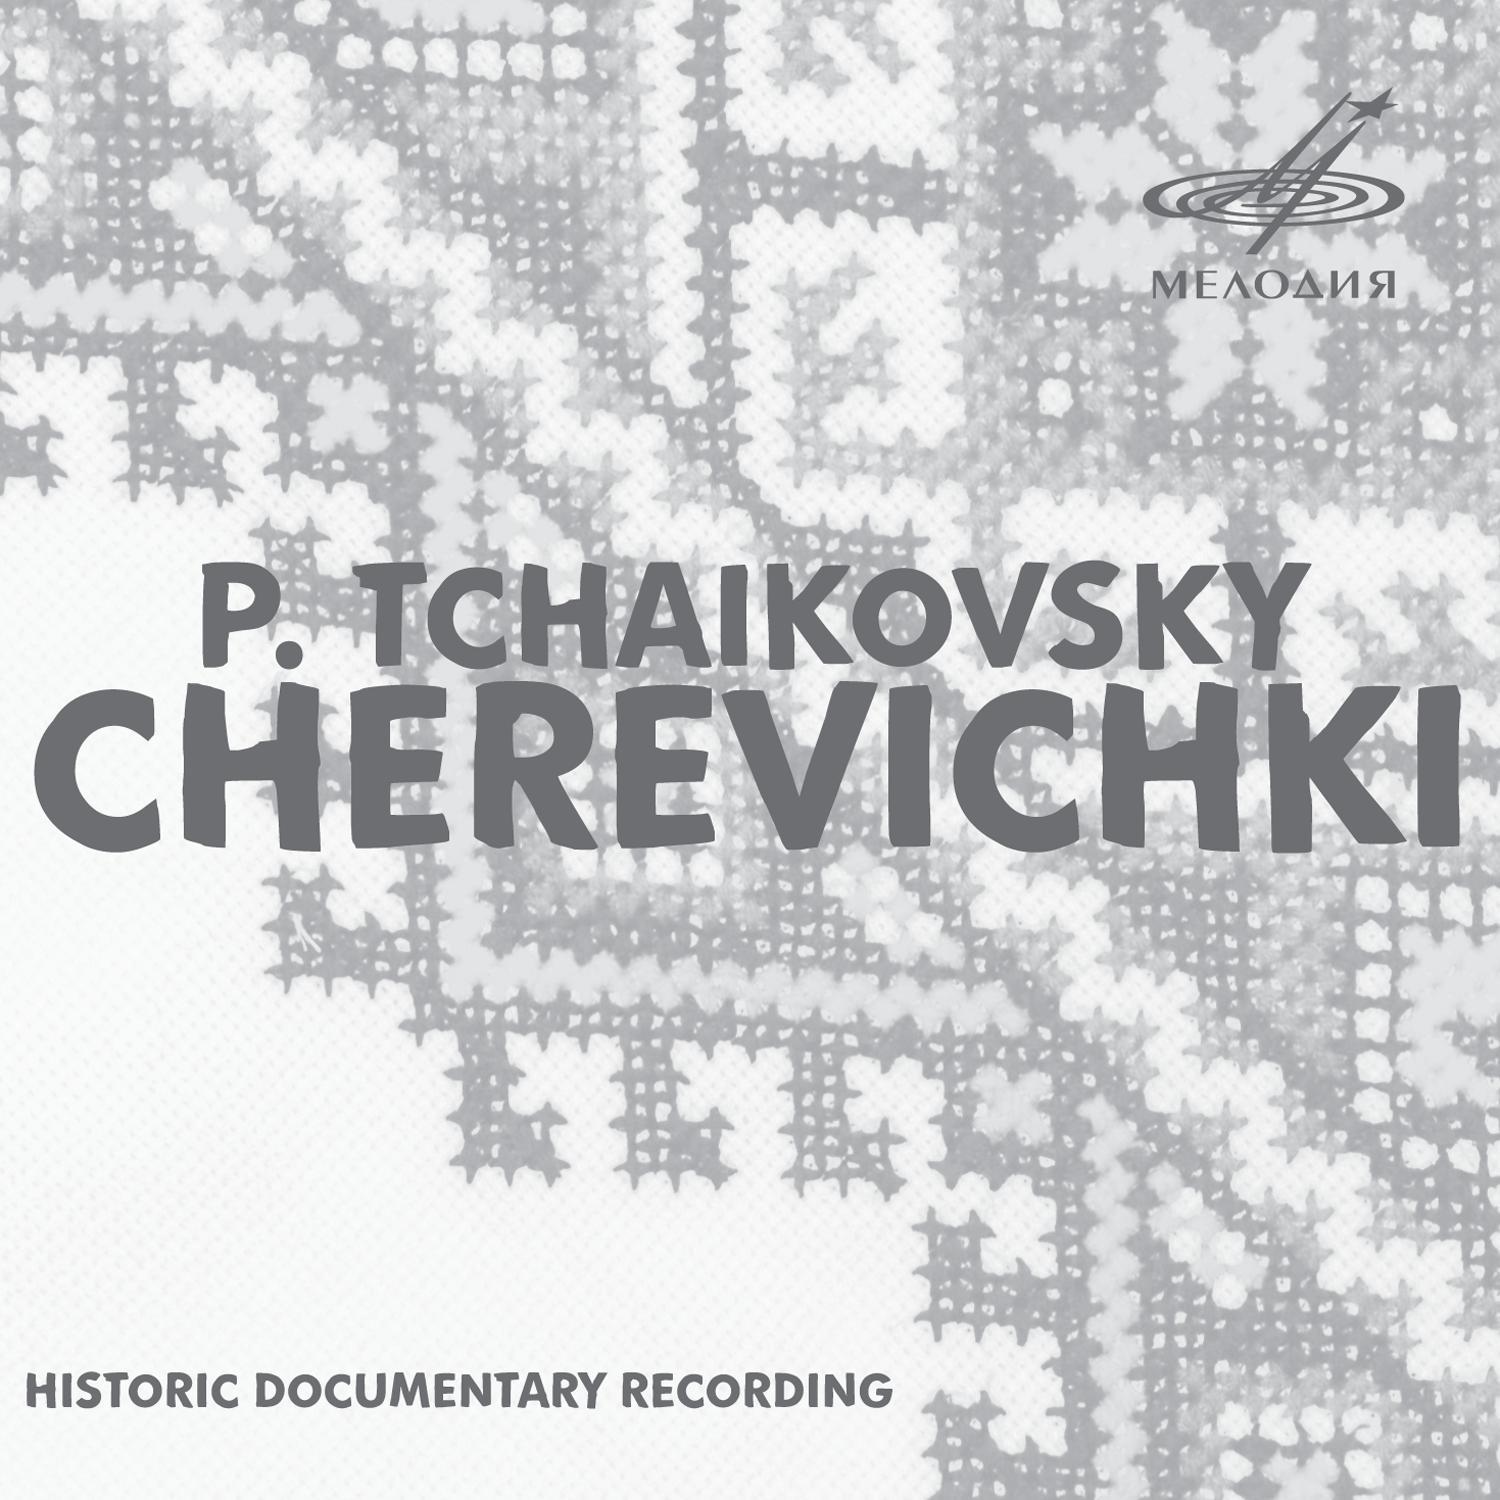 Alexander Melik-Pashayev - Cherevichki, Act III, Scene III: Polonaise 